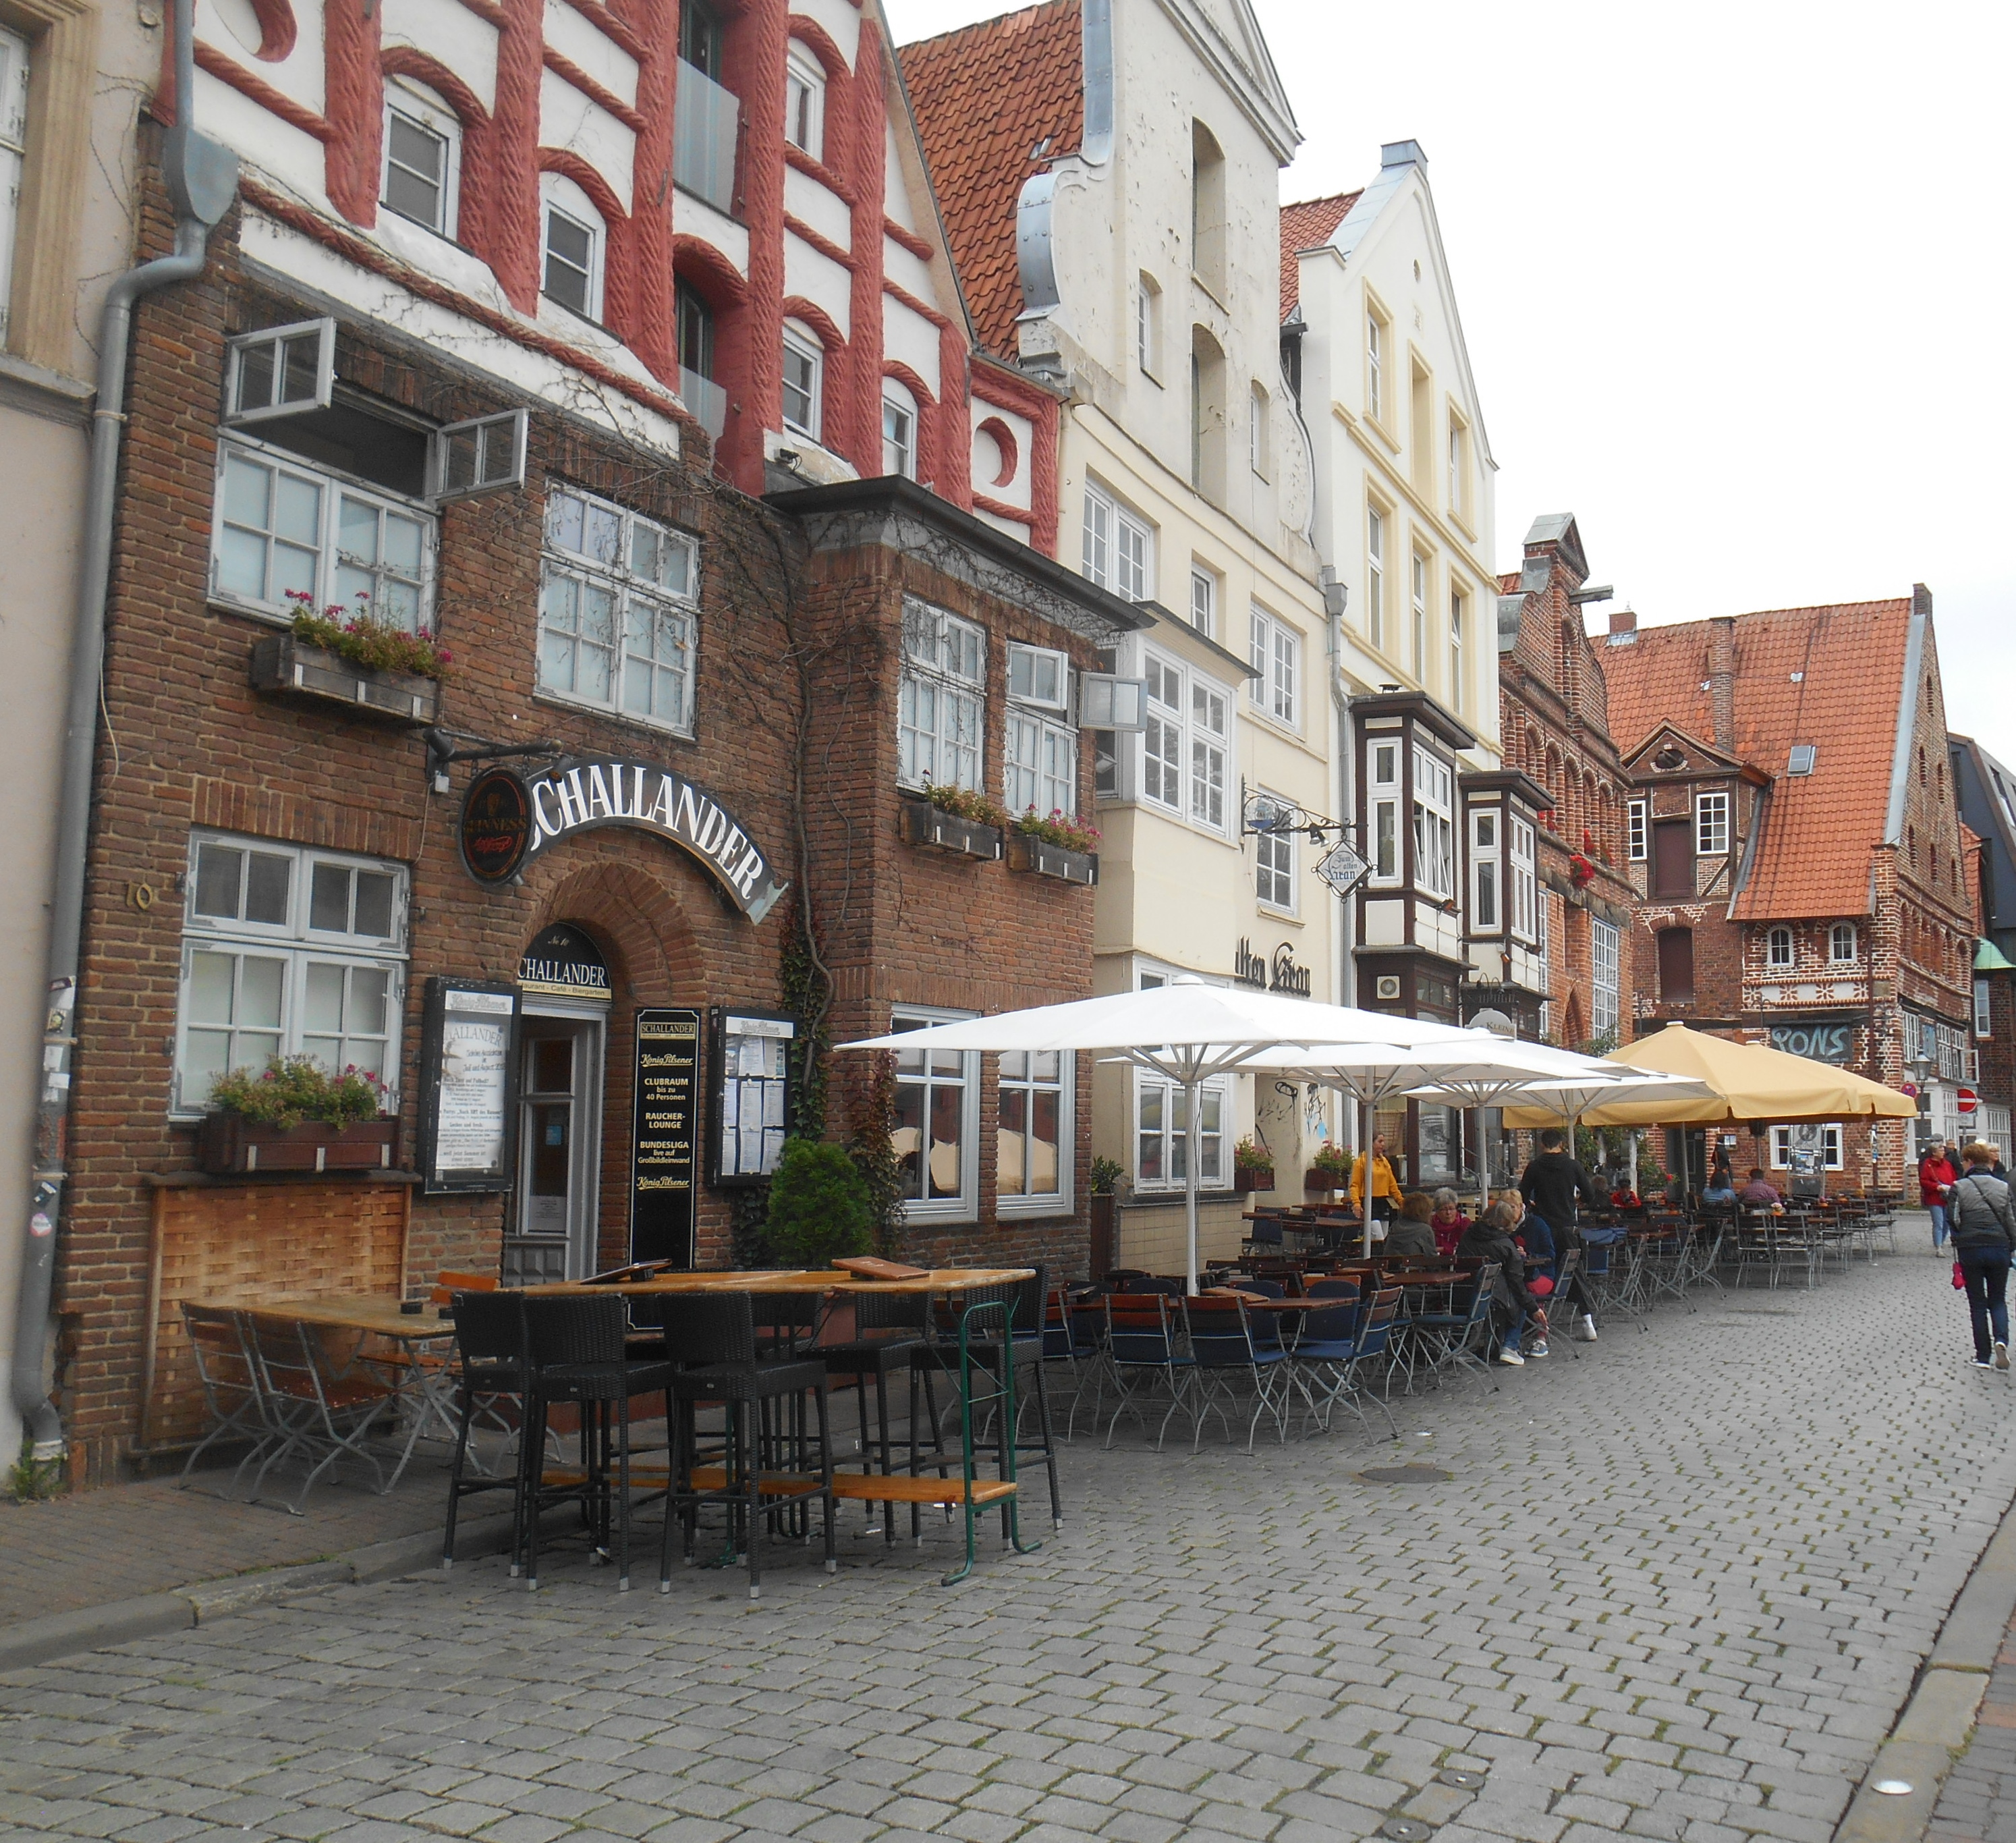 Sehenswürdigkeiten in Lüneburg